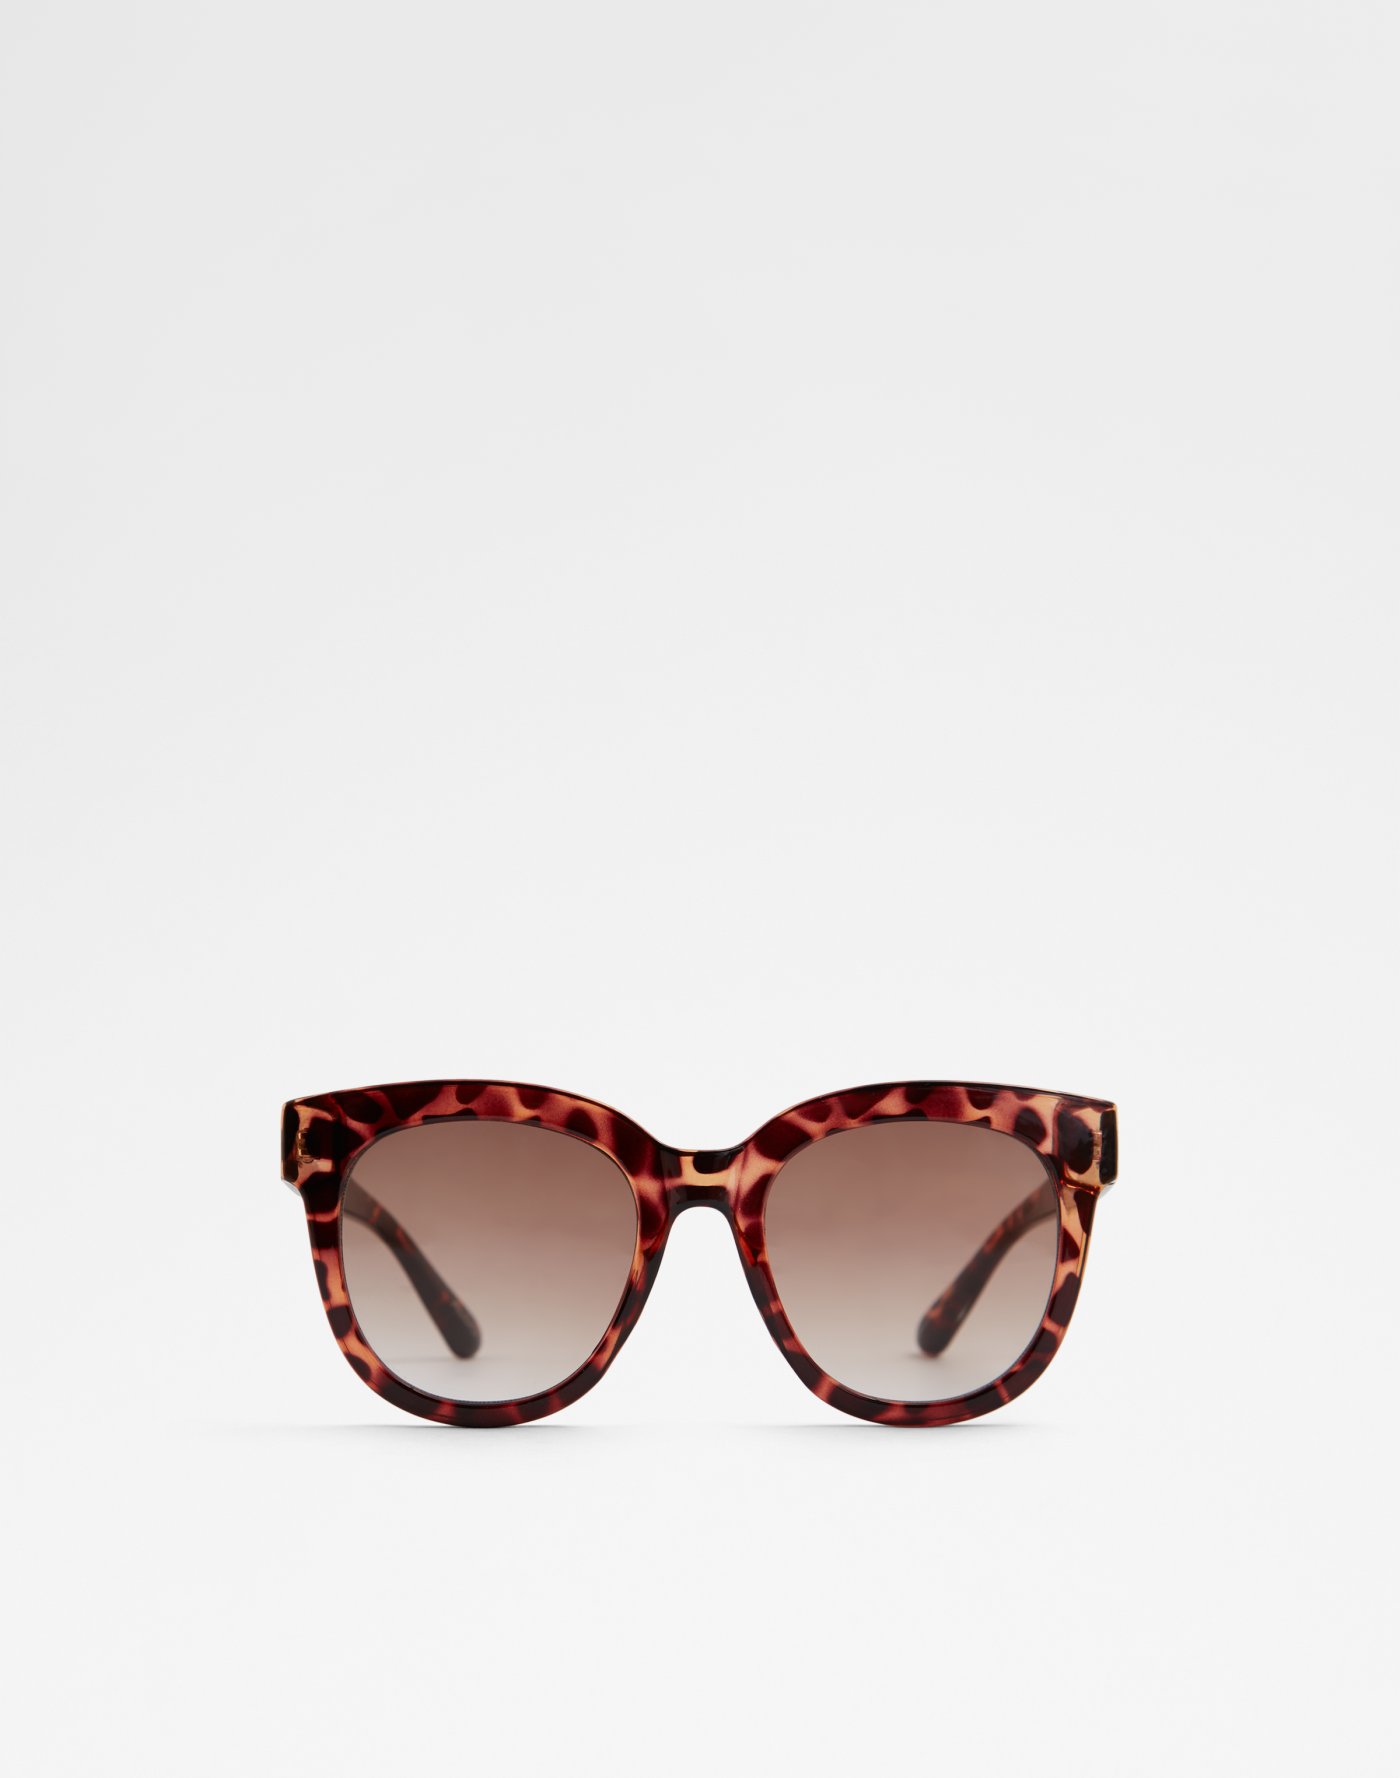 Sunglasses | Aldoshoes.com US